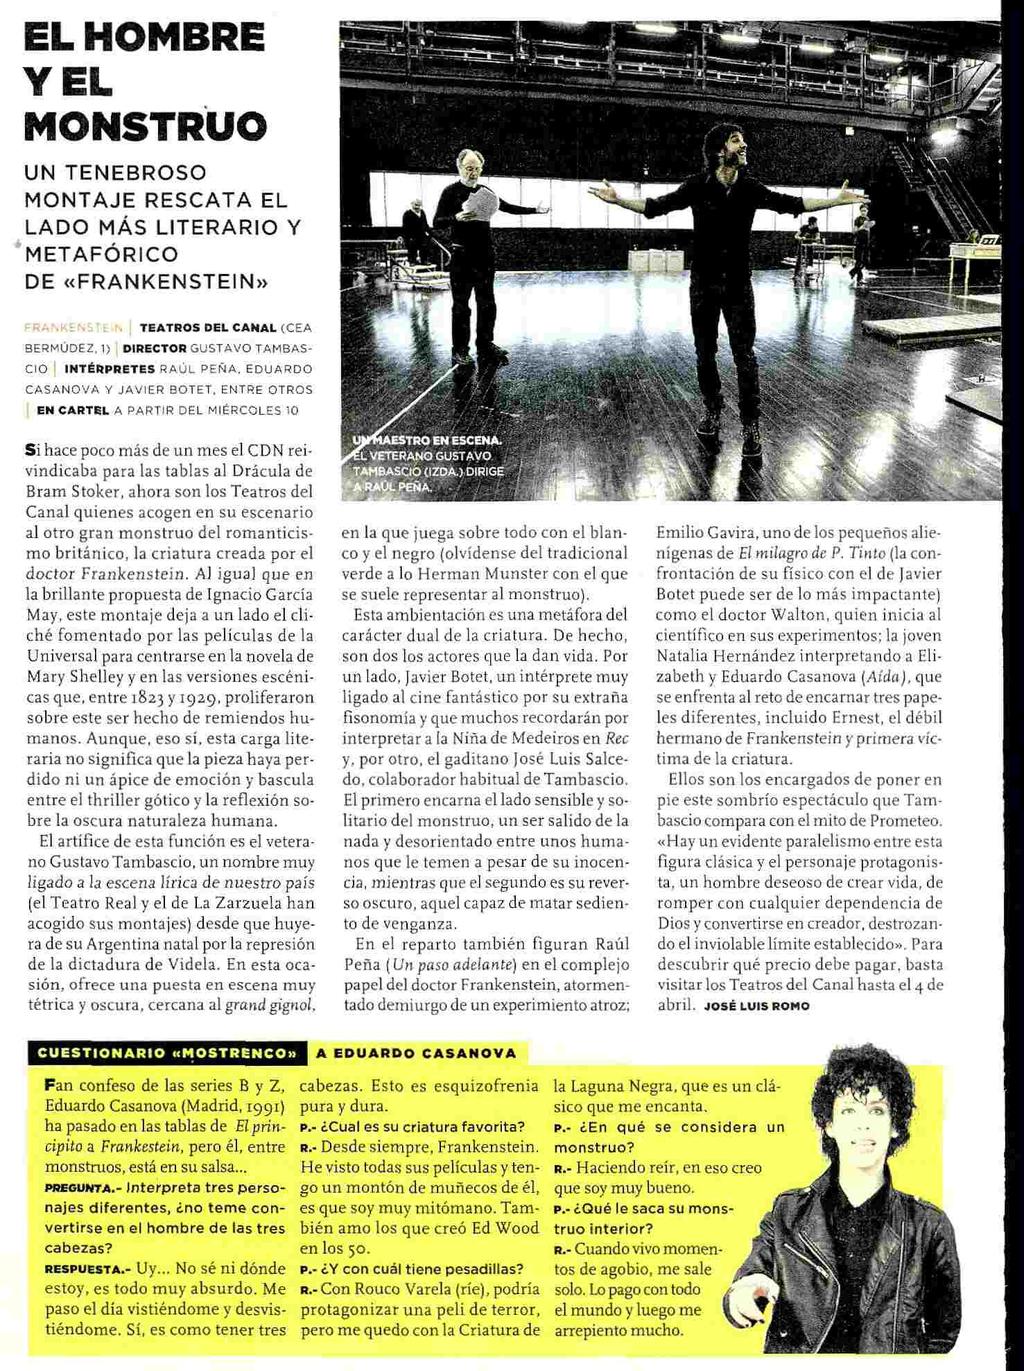 EL MUNDO (LA LUNA DE METROPOLI) 05/03/10 Semanal (Viernes) 360.403 Ejemplares 261.